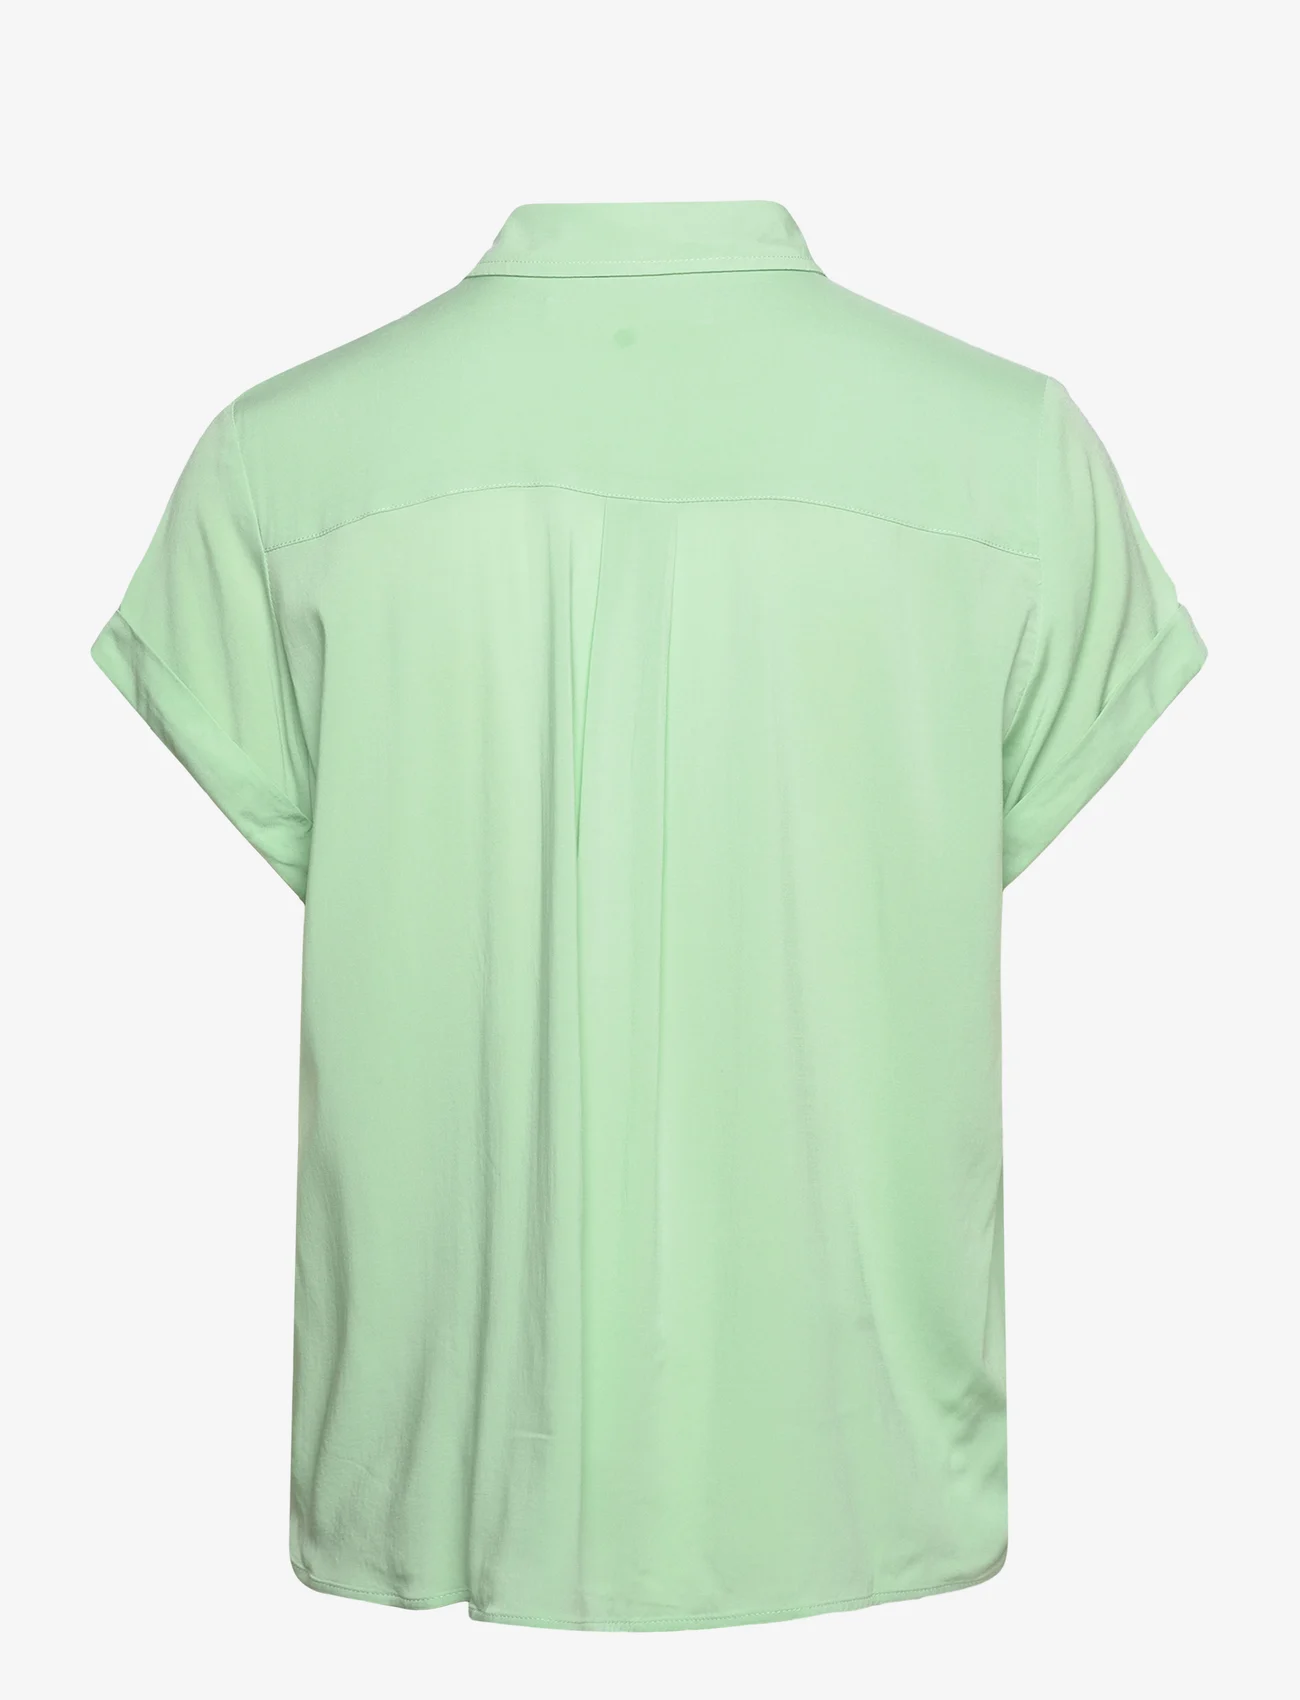 Samsøe Samsøe - Majan ss shirt 9942 - kurzärmlige hemden - sprucestone - 1